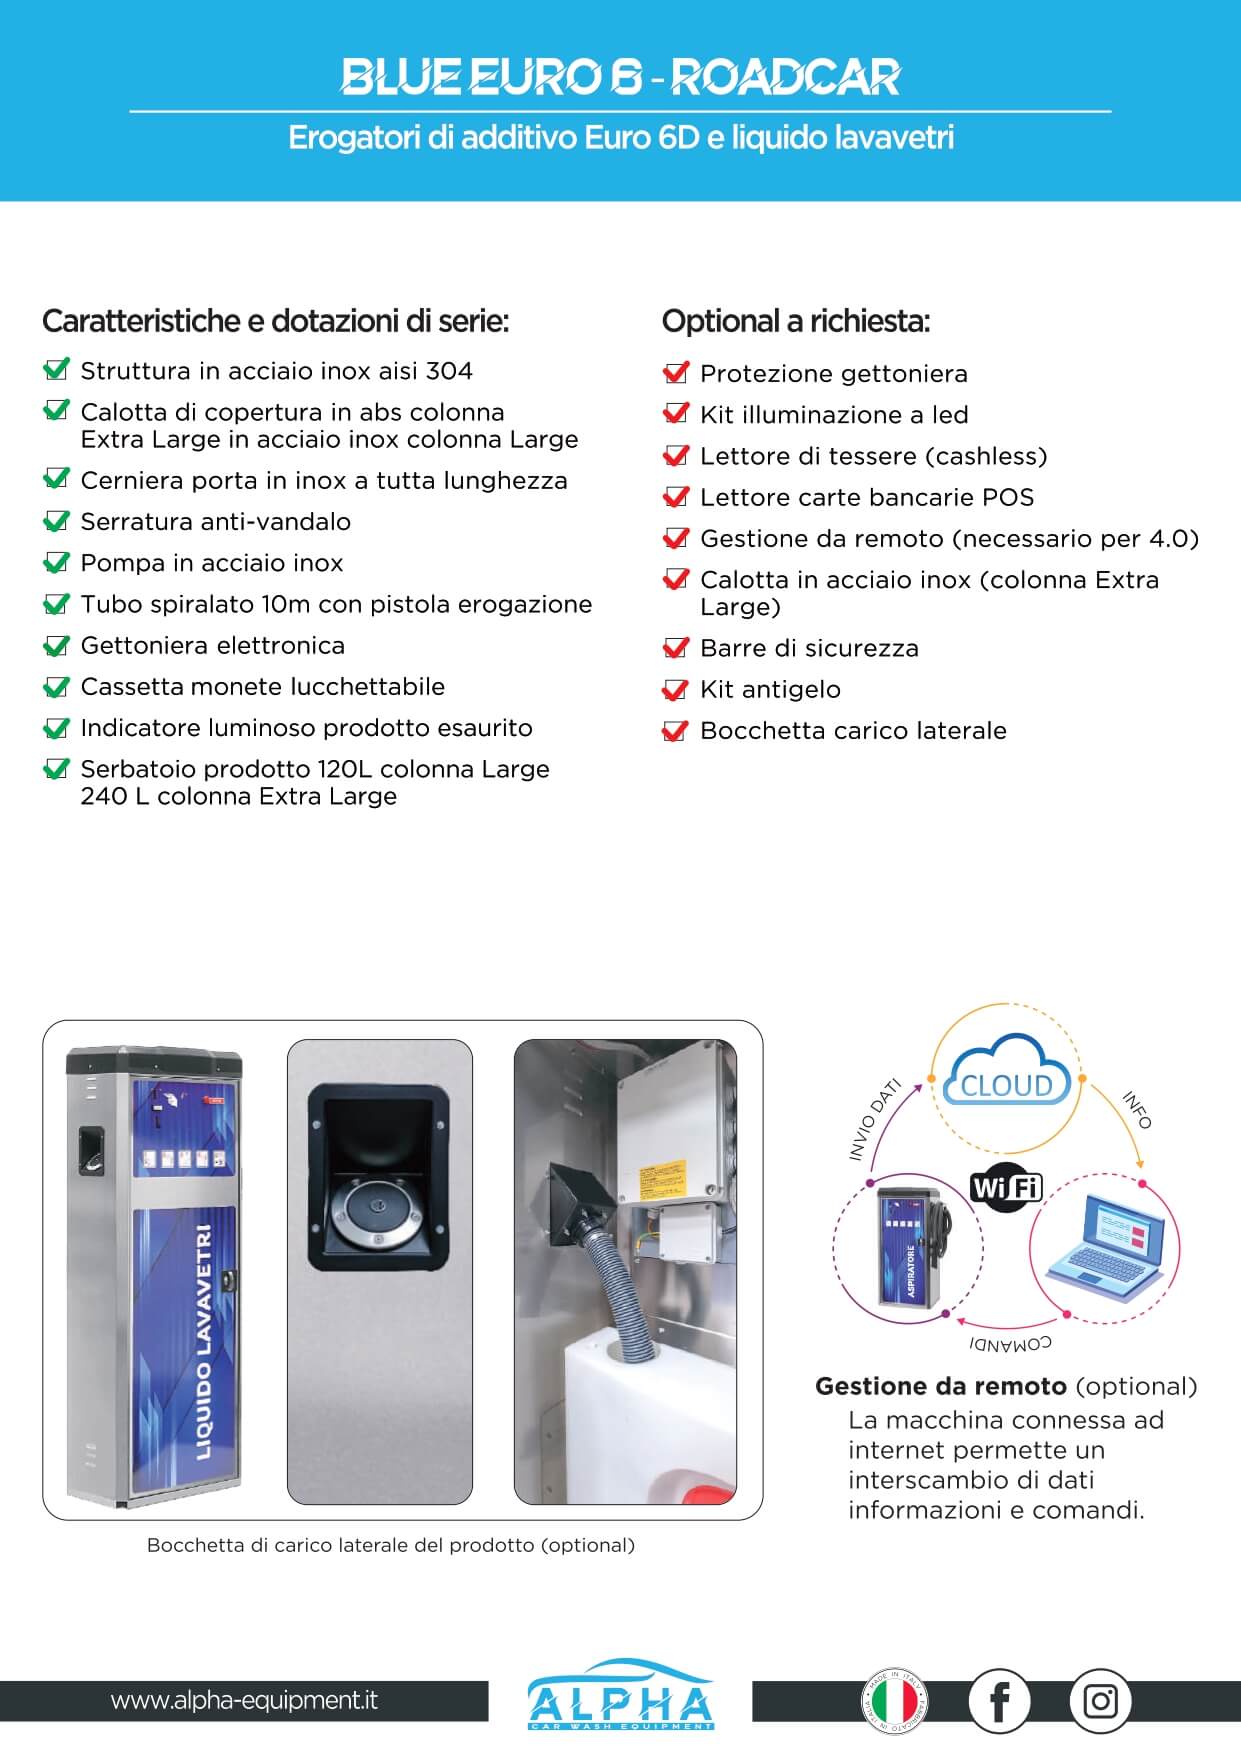 Erogatori di attidivo euro 6 e liquido lavavetri Alpha Equipment prodotti per autolavaggi made in Italy